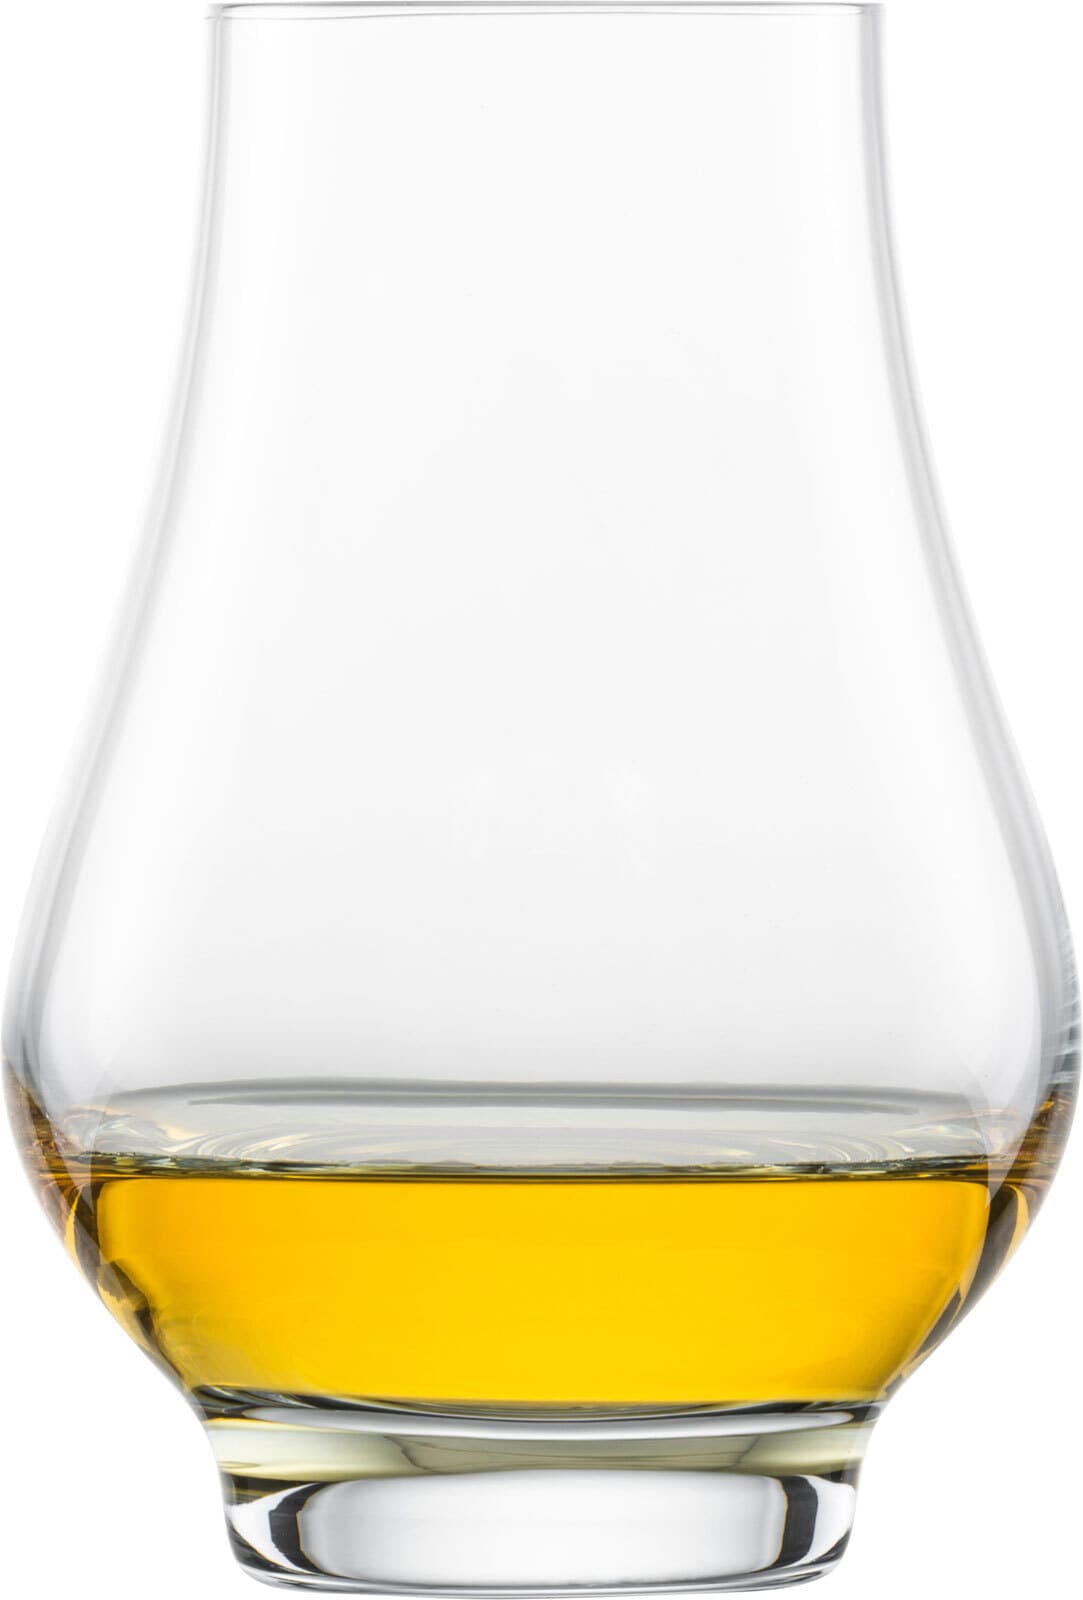 SCHOTT ZWIESEL Whiskyglas BAR SPEZIAL 4er Set - je 322 ml